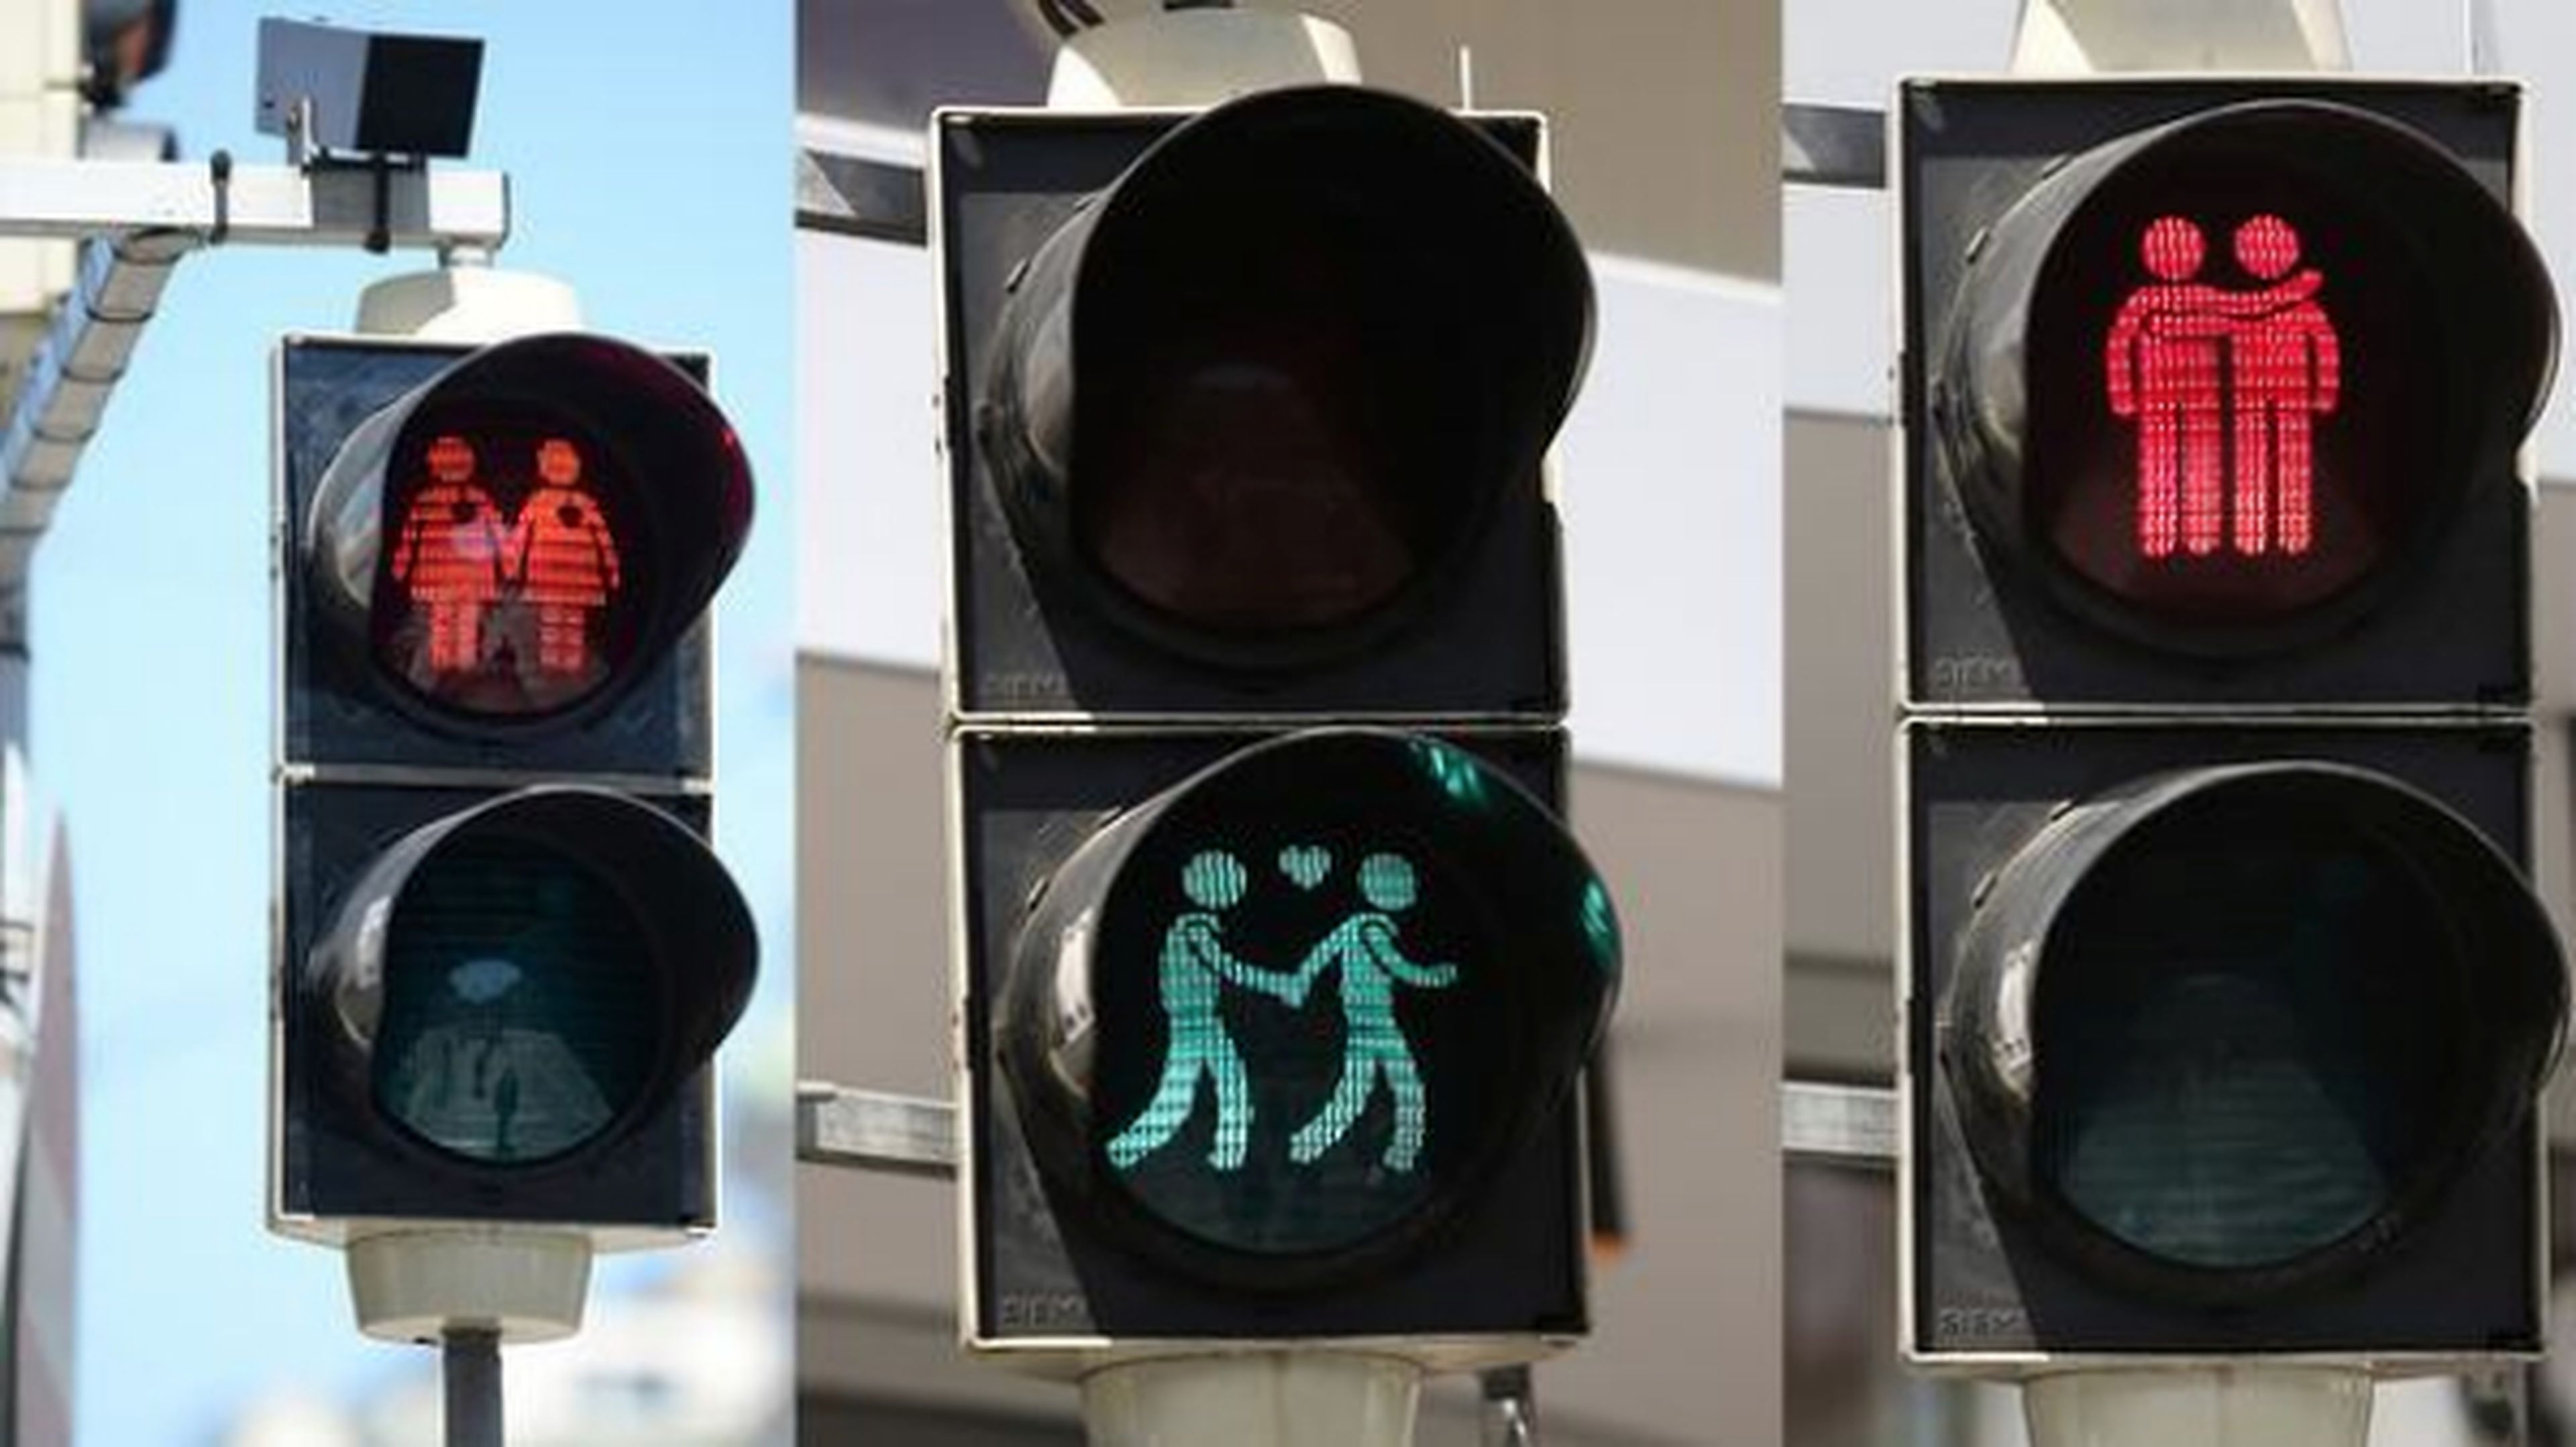 Los nuevos semáforos ‘gayfriendly’ de Viena